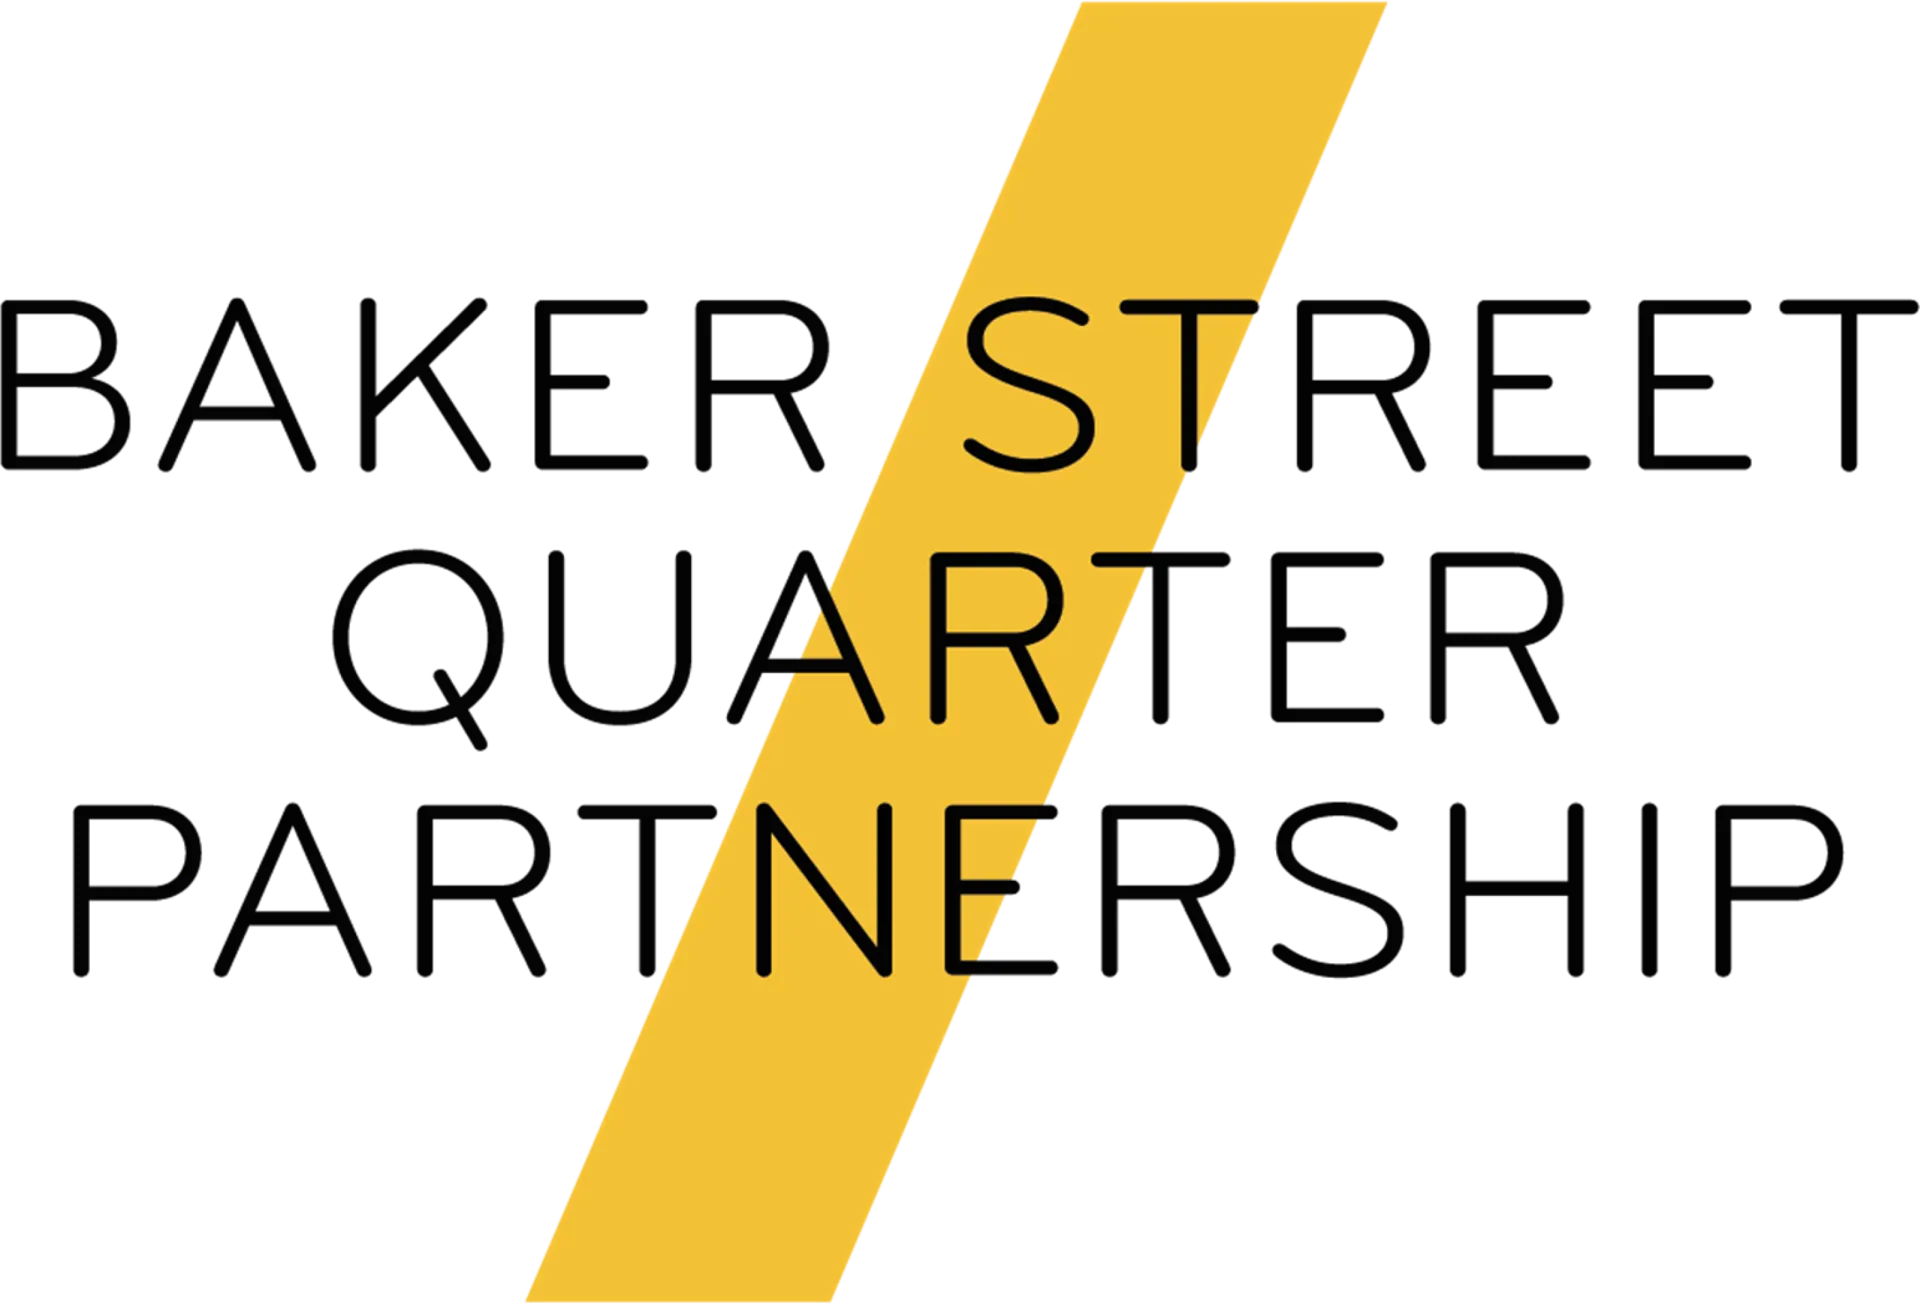 Baker St Quarter Partnership